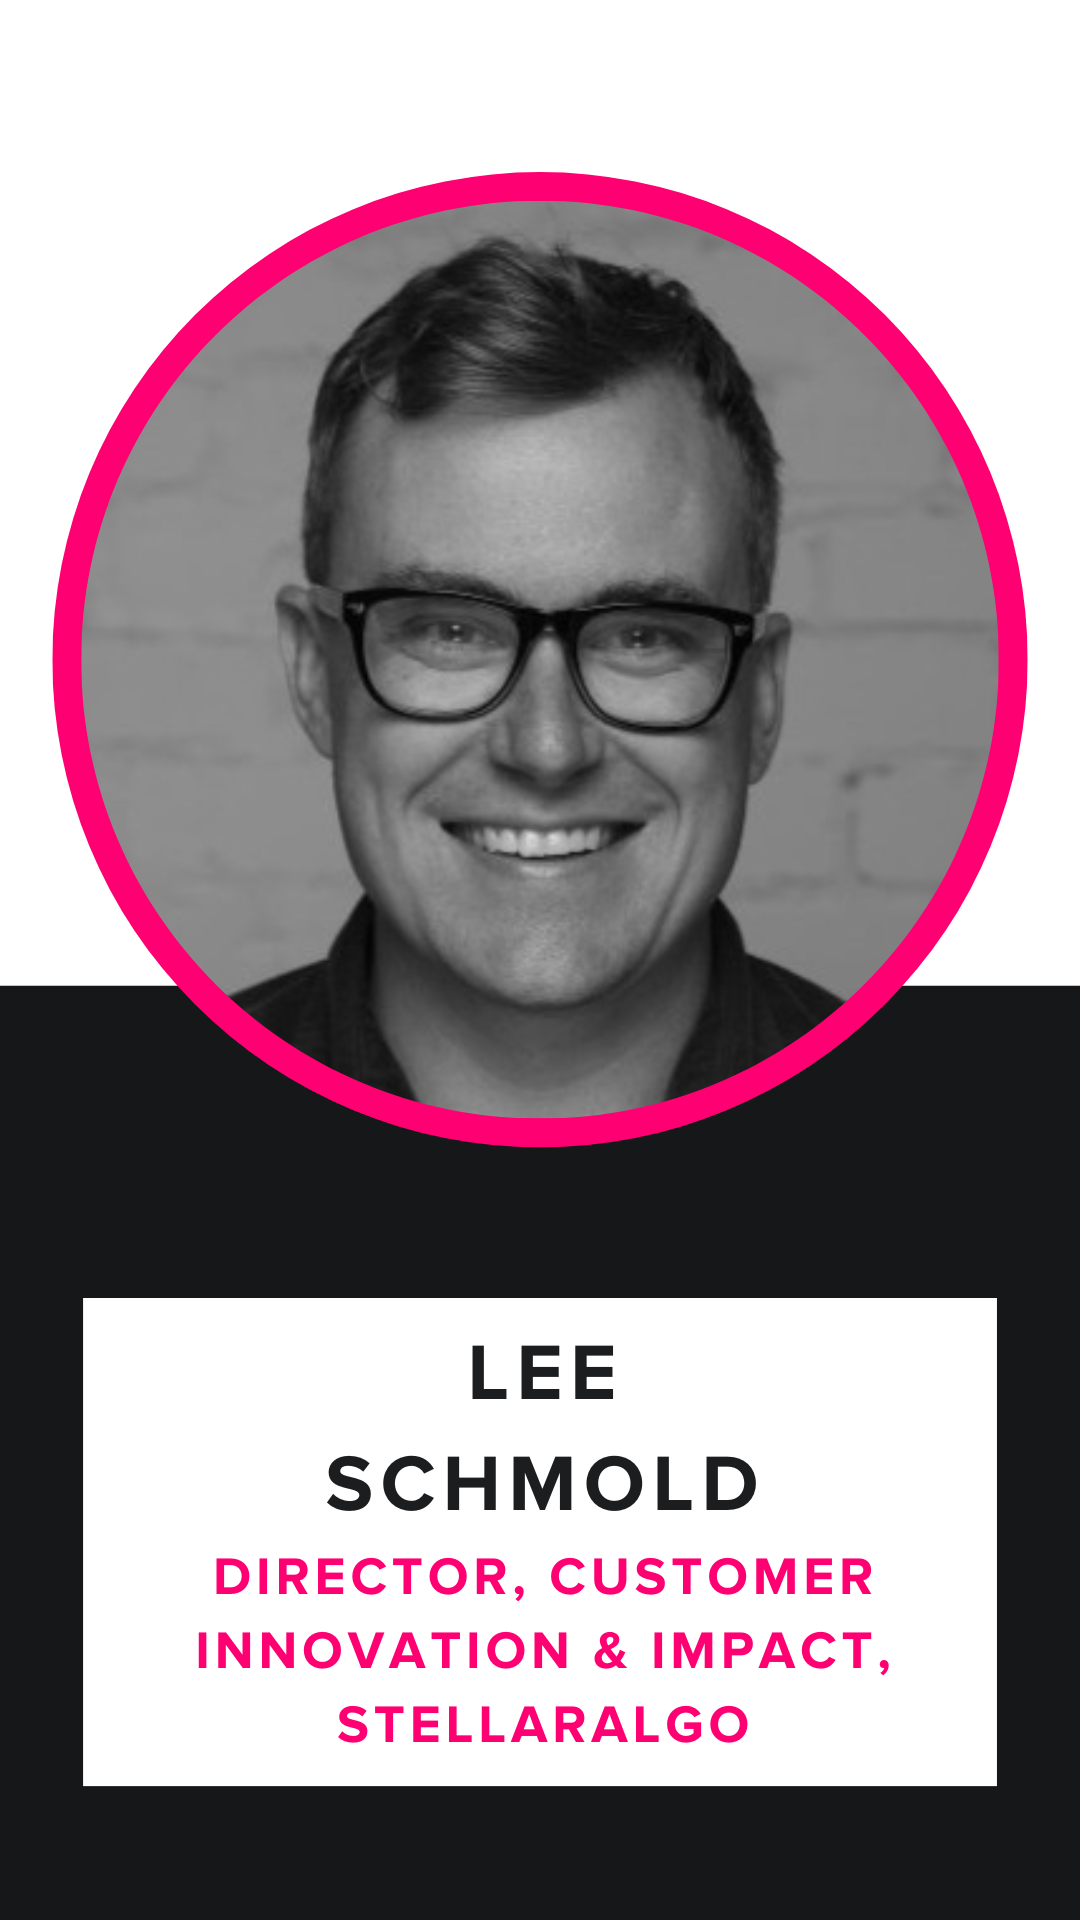 Lee Schmold